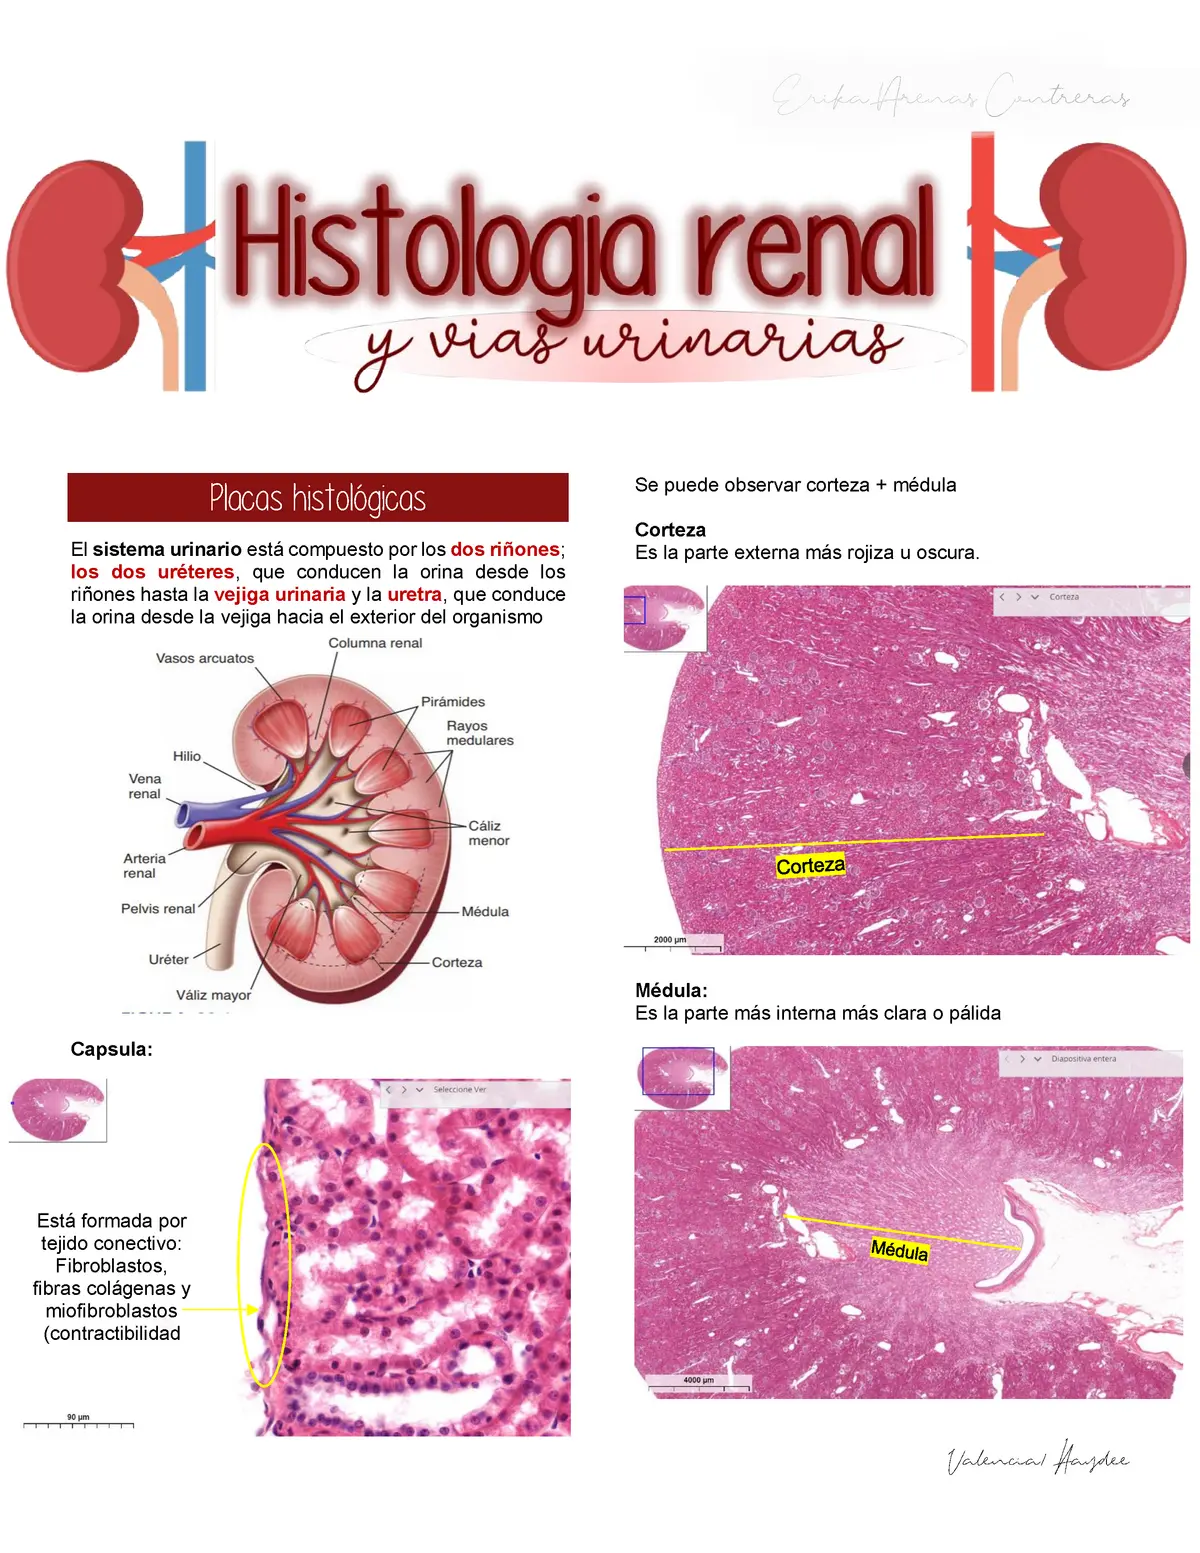 histologia del riñon resumen - Qué es la histologia del riñón